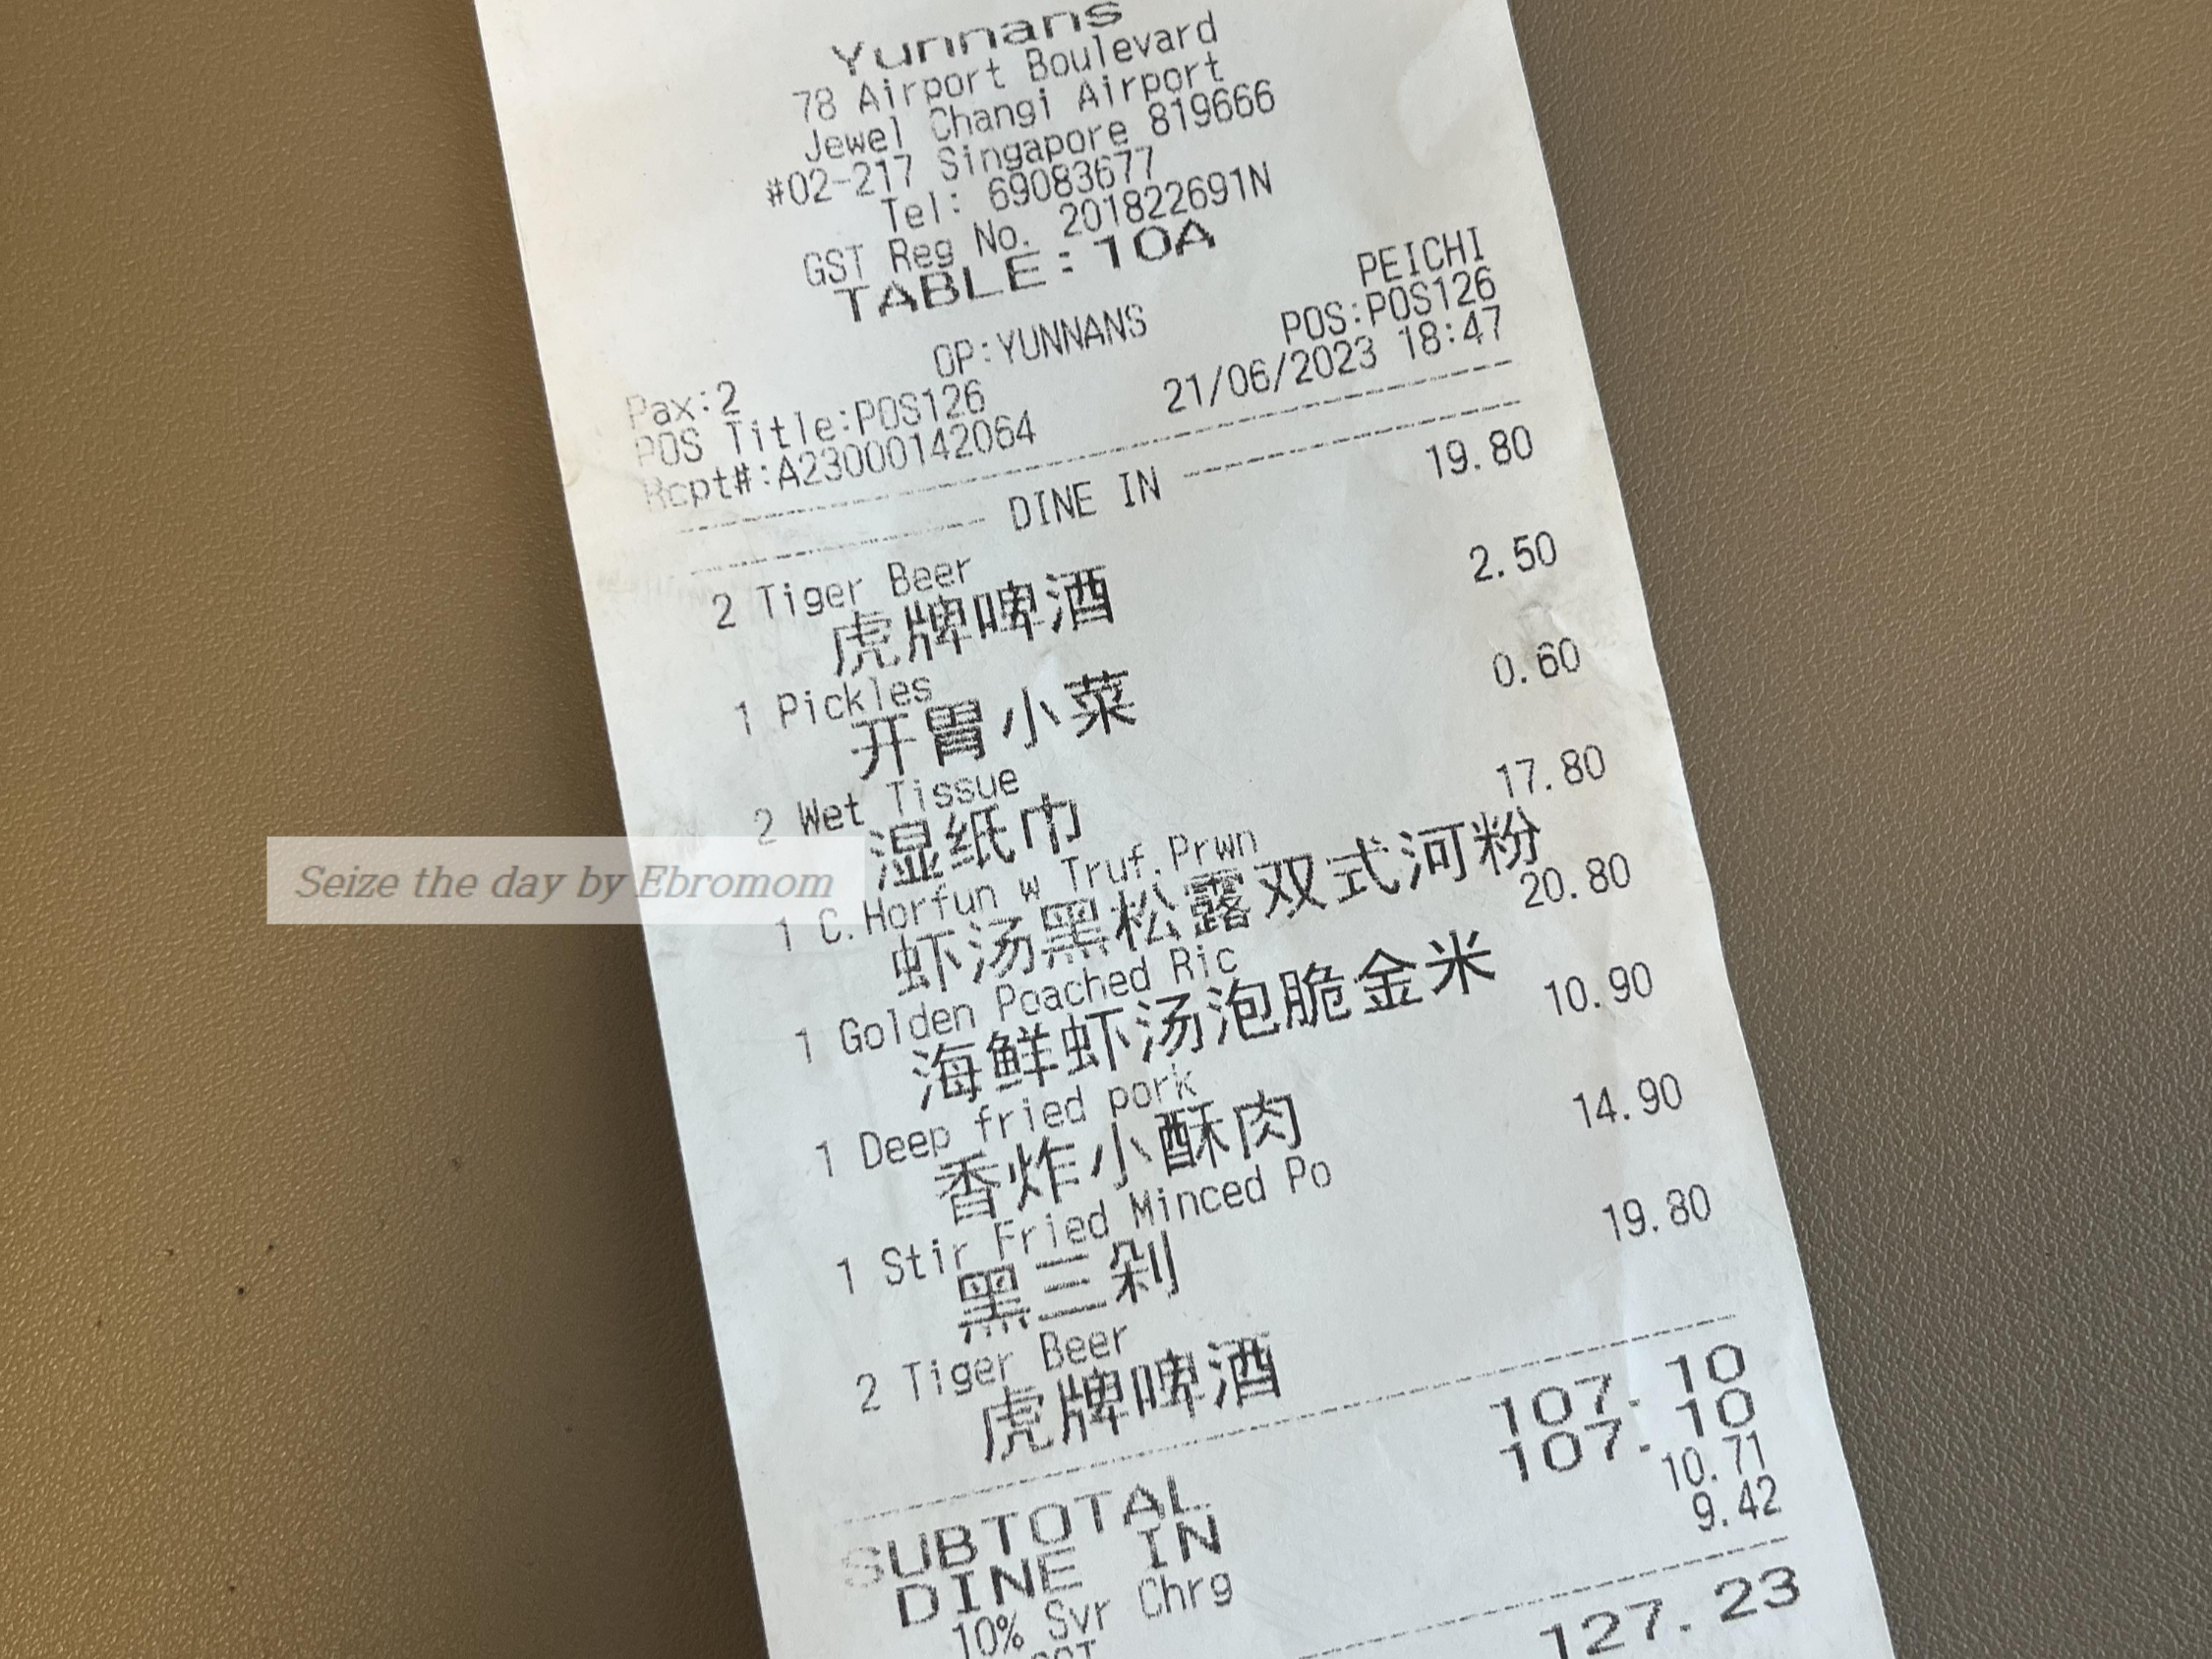 Yun Nans receipt